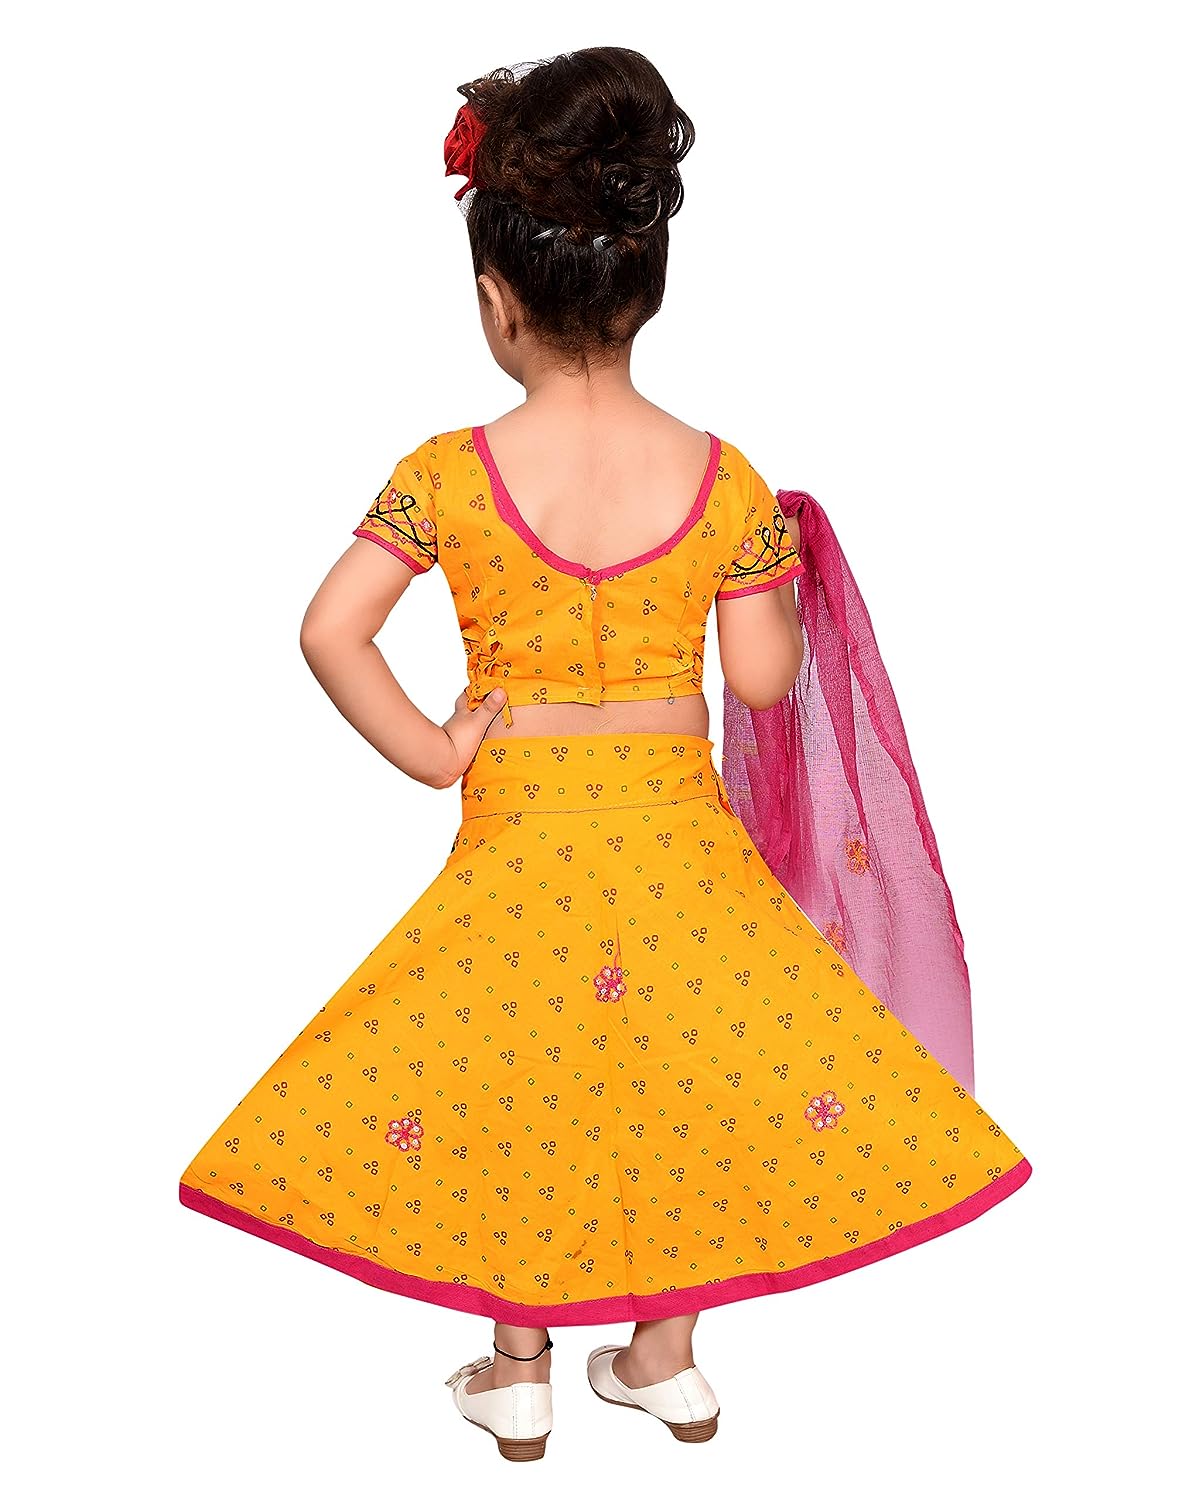 Dress your Kids in Krishna Dress, Baby Radha Costume for Janmashtami